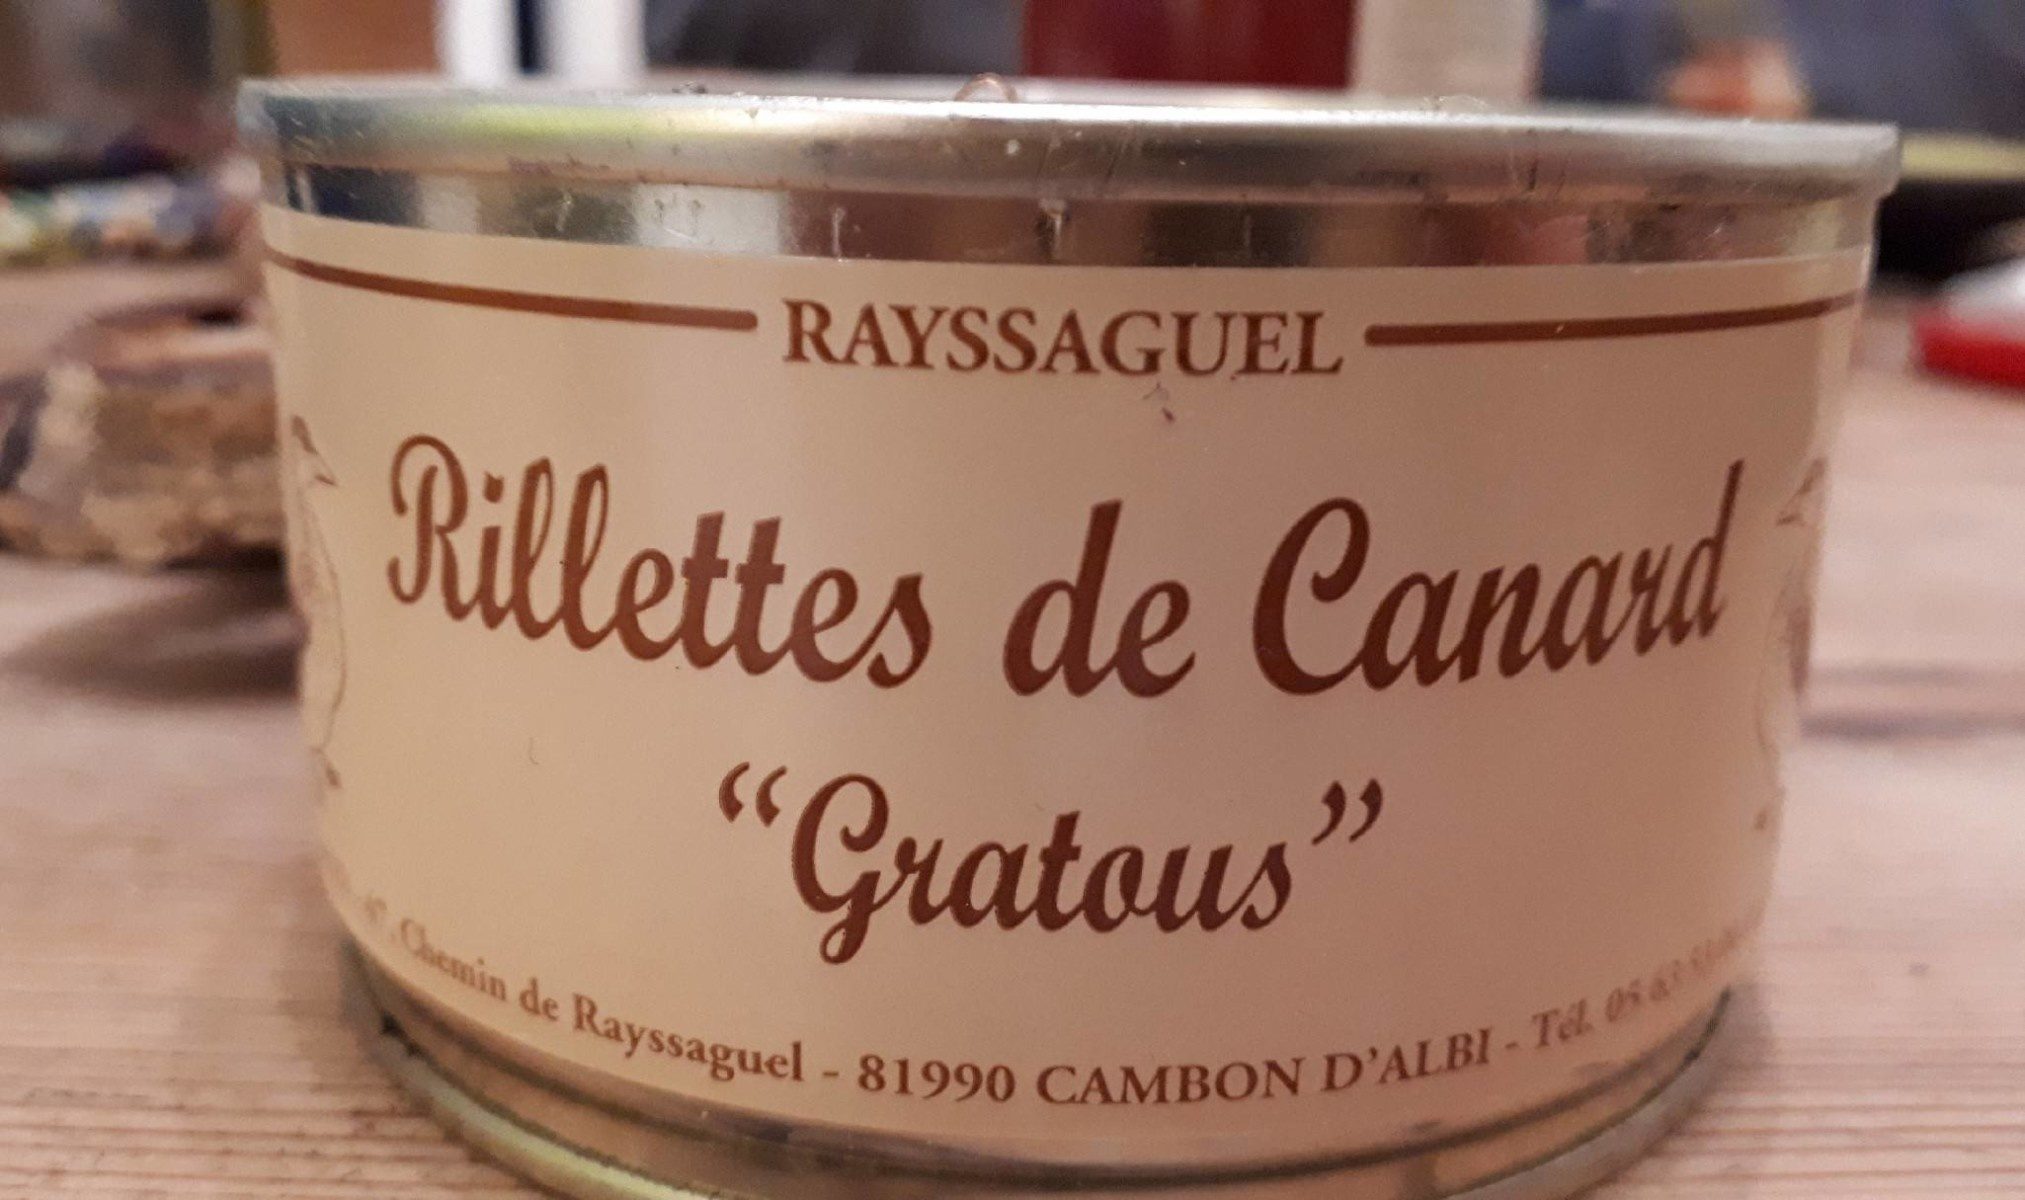 P'tit beurre lait praliné noisette chocolat - Product - fr